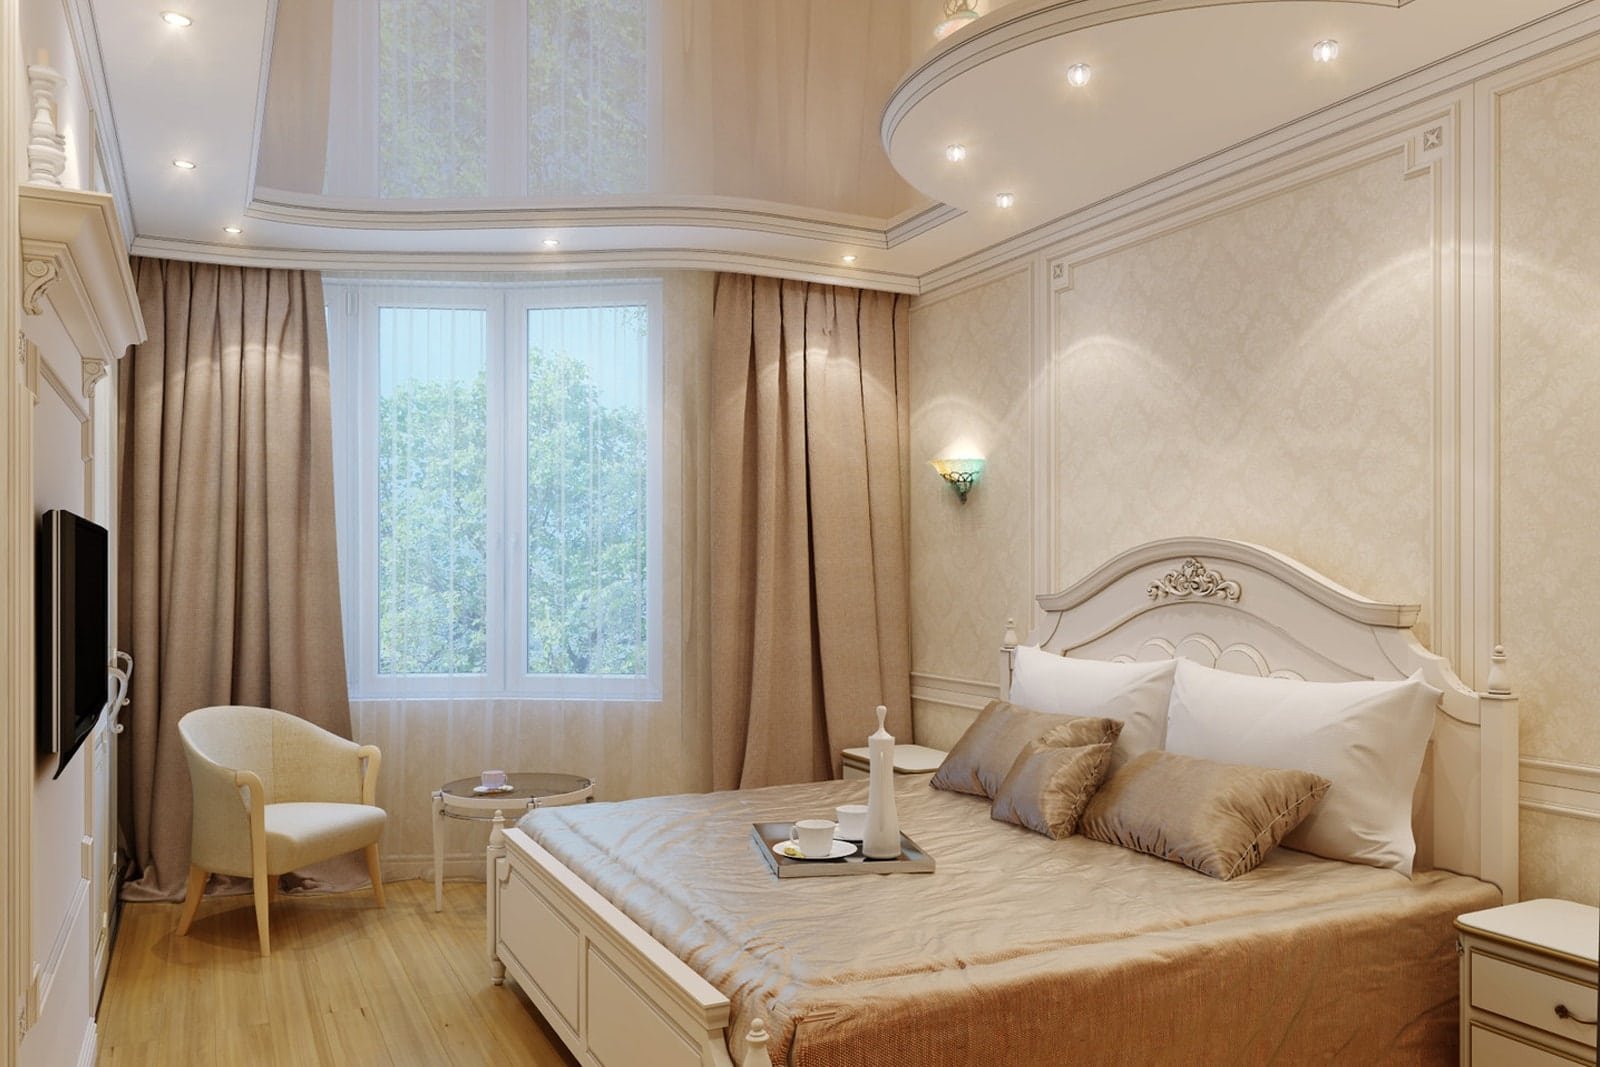 Потолок в спальне: дизайн, виды, цвет, фигурные конструкции, освещение, при...